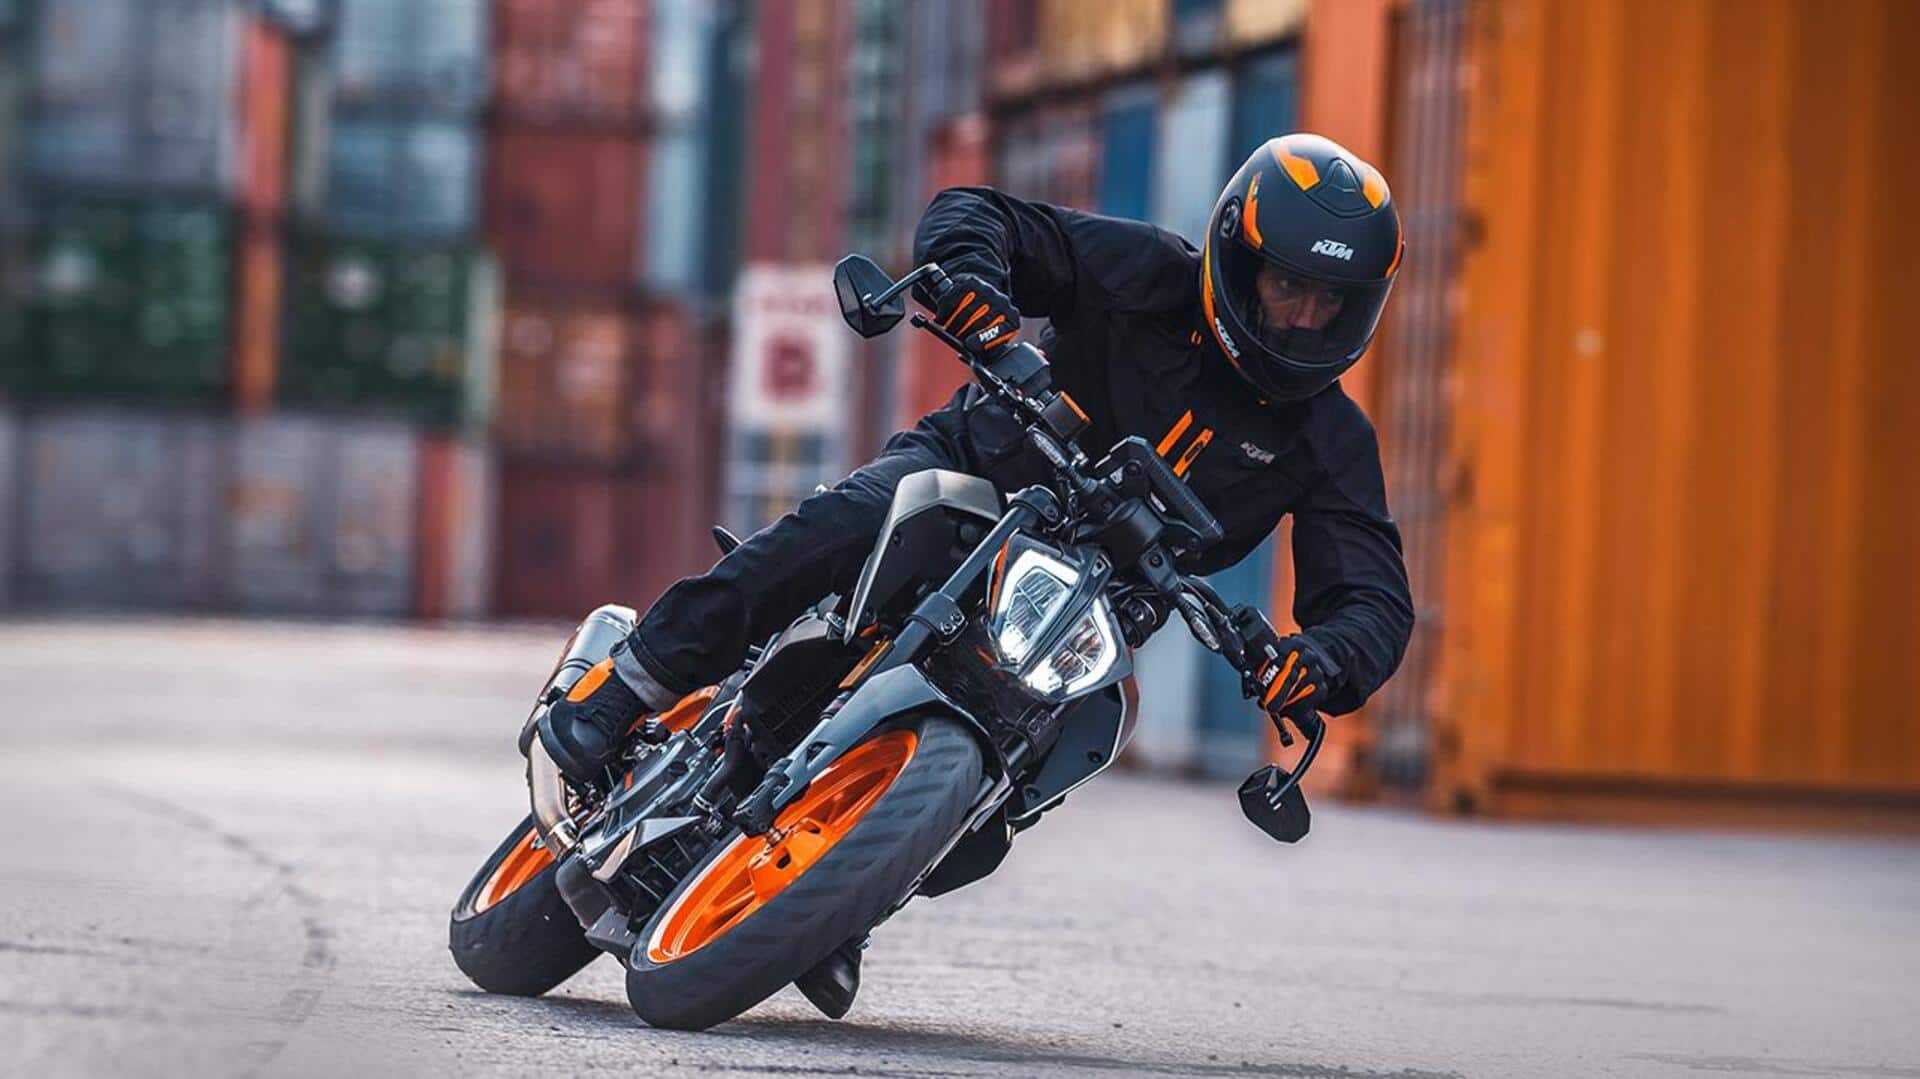 KTM ड्यूक बाइक के अपडेटेड मॉडल्स पेश, जानिए भारत में कब होंगे लॉन्च 